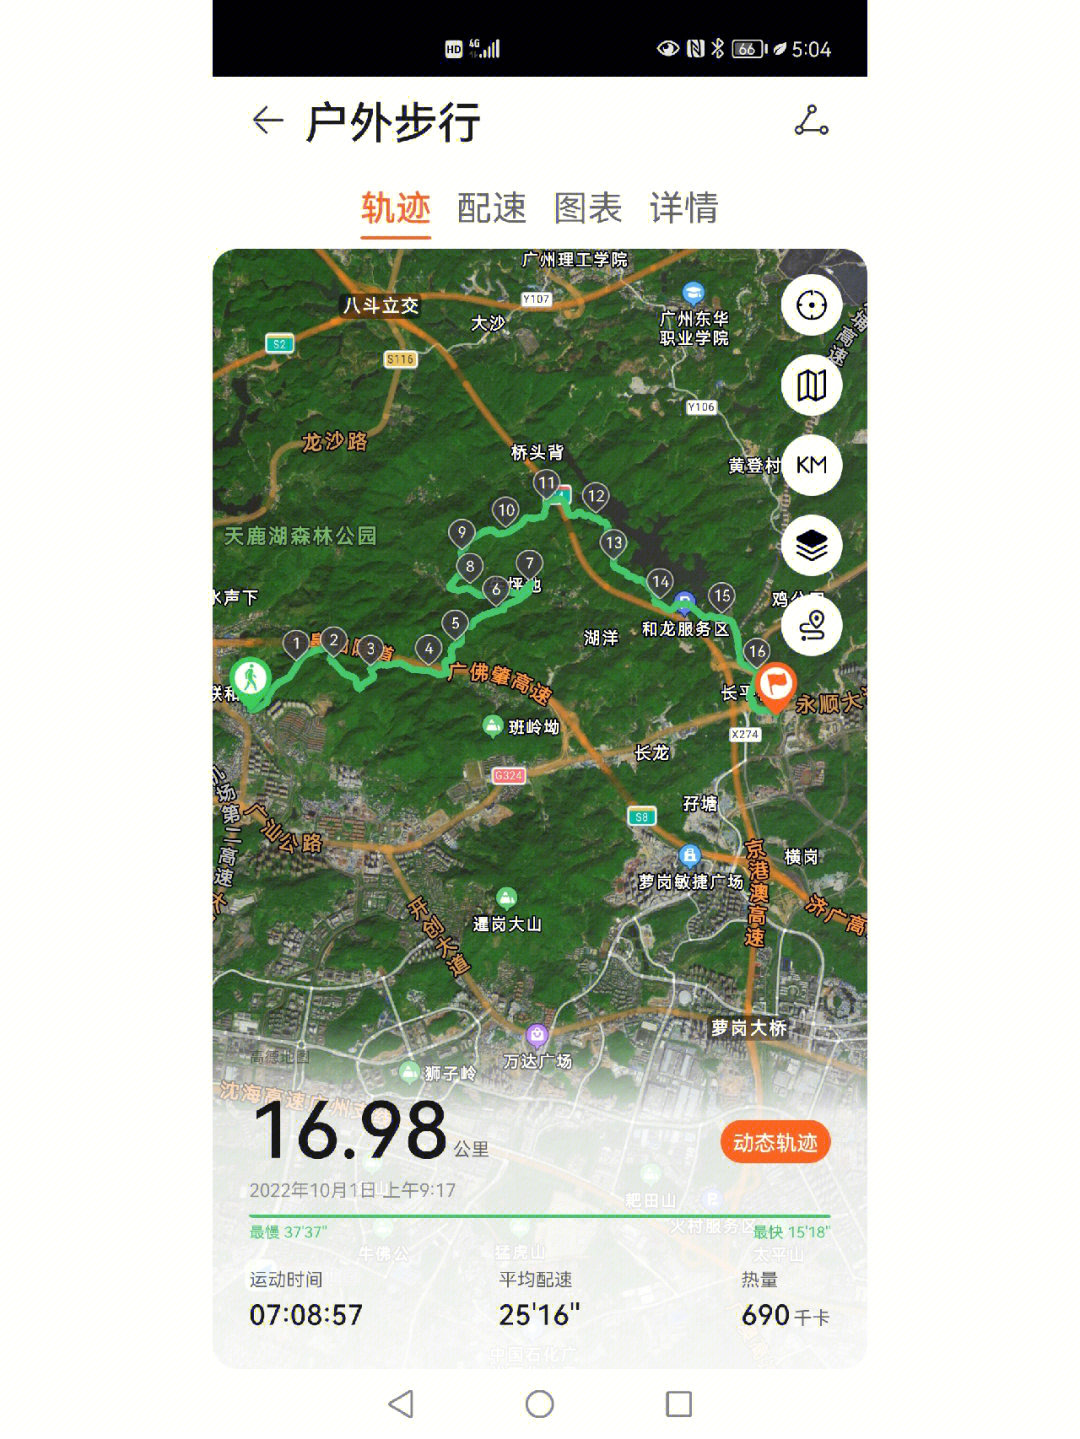 广州火龙线徒步路线图图片